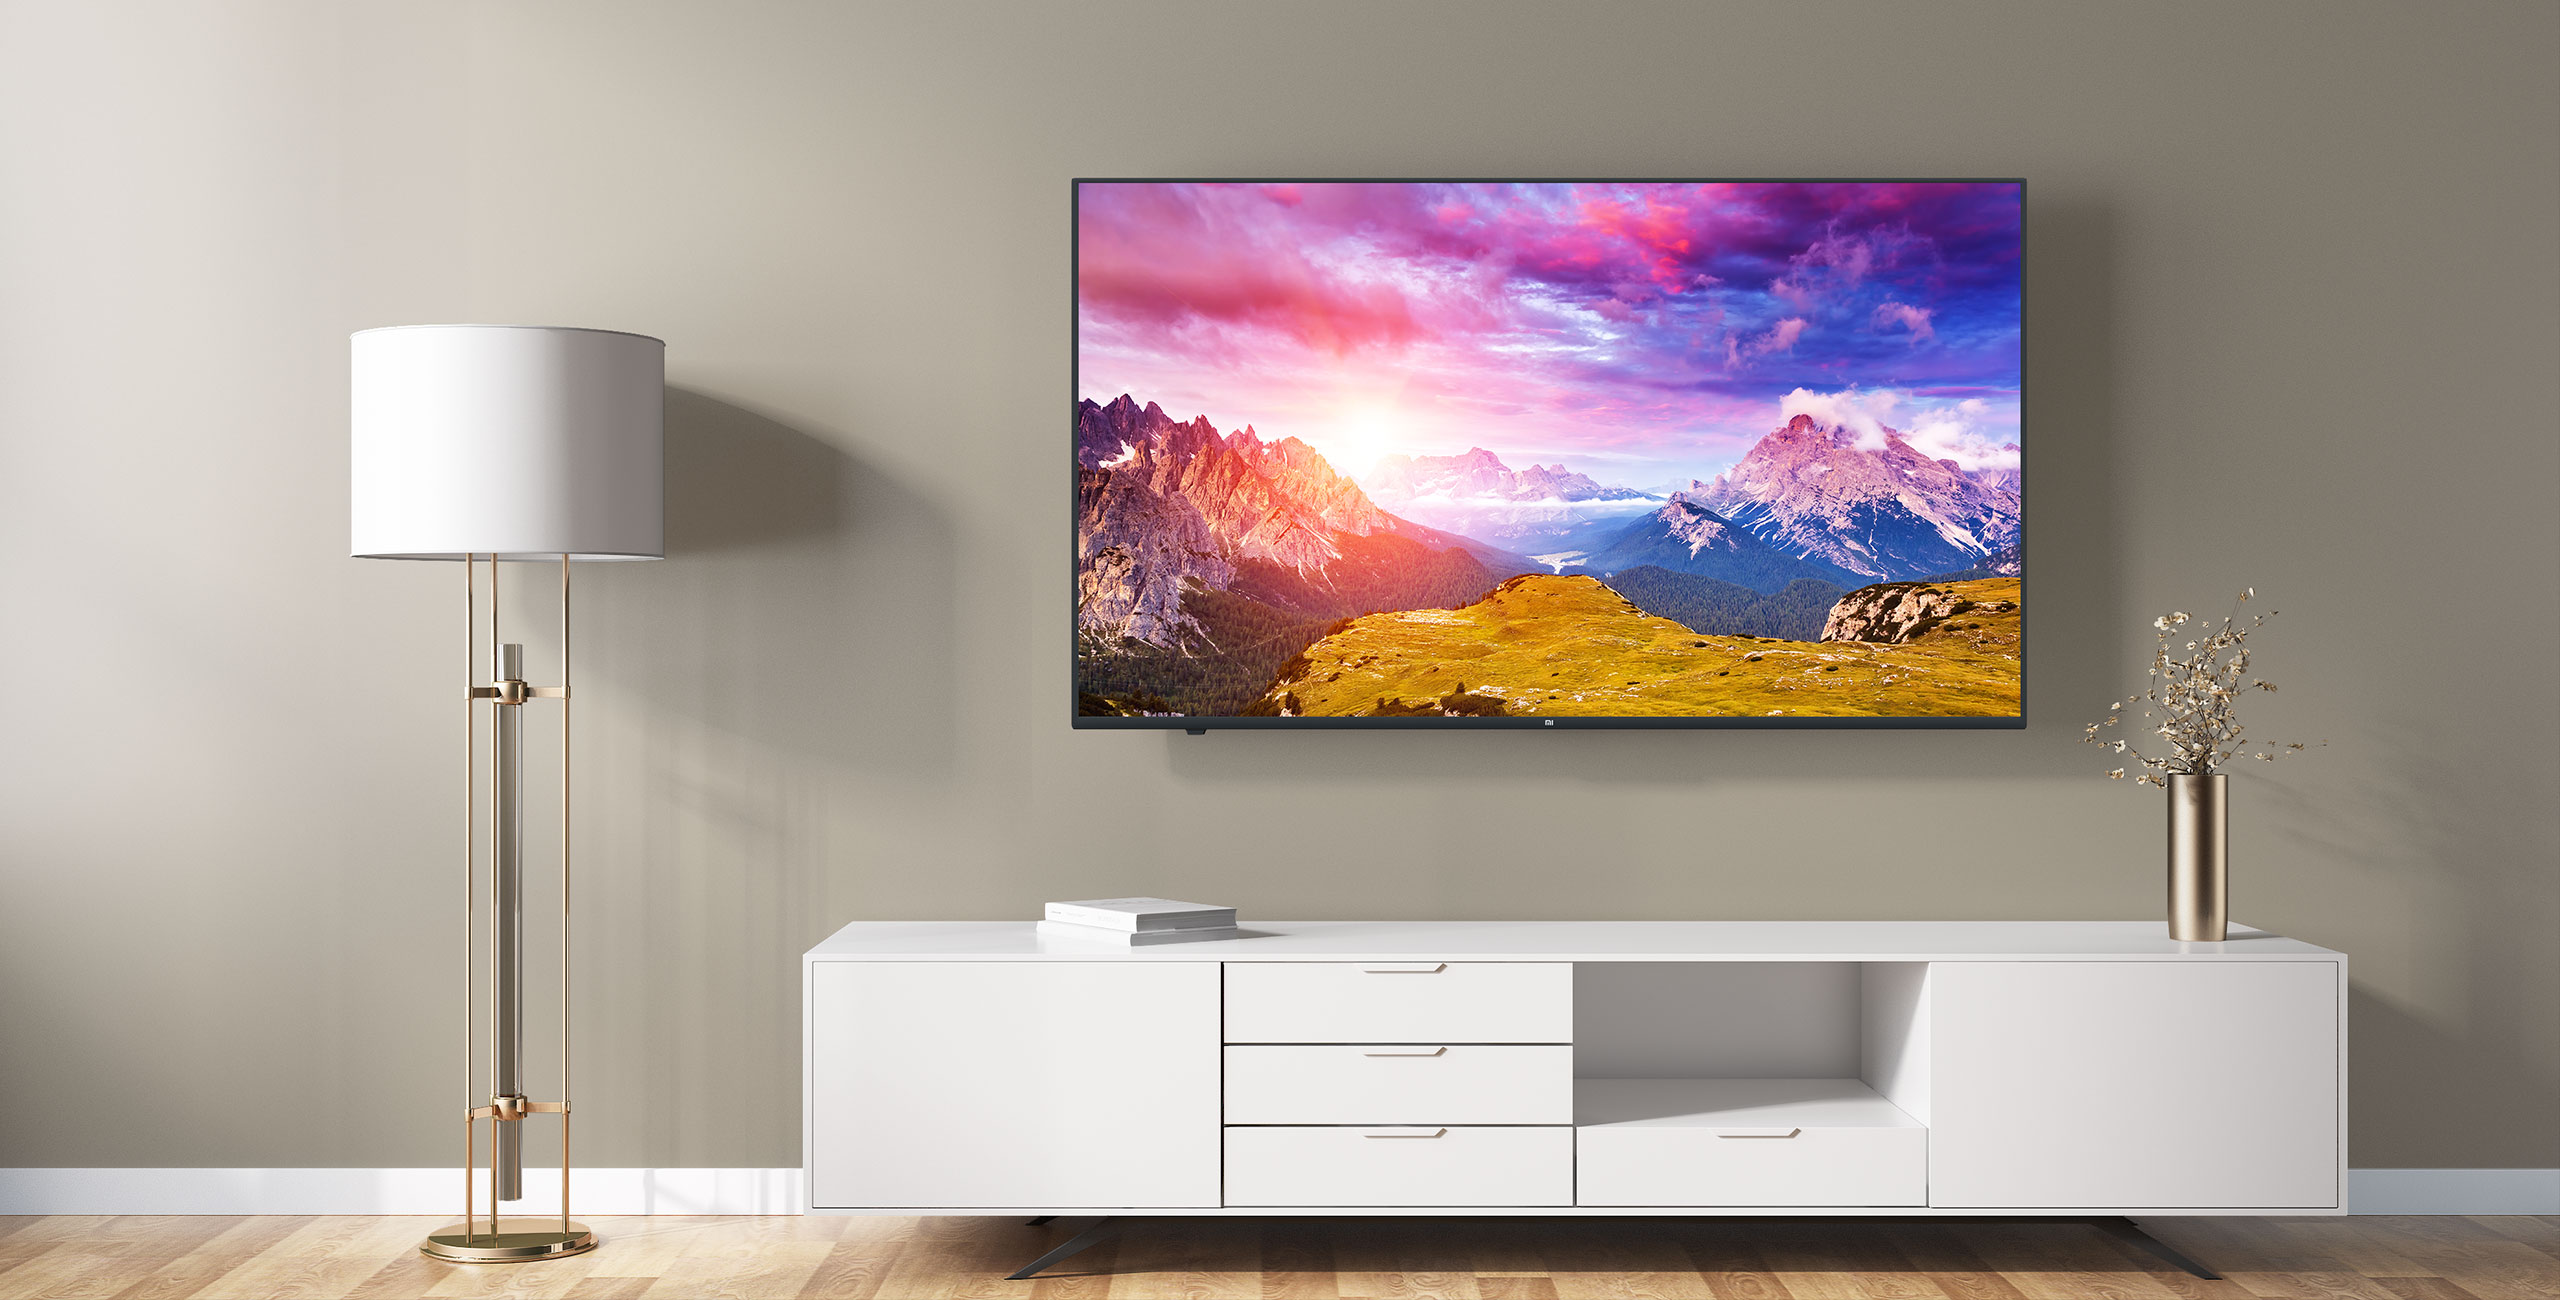 小米电视4C 43英寸wifi网络智能平板液晶电视